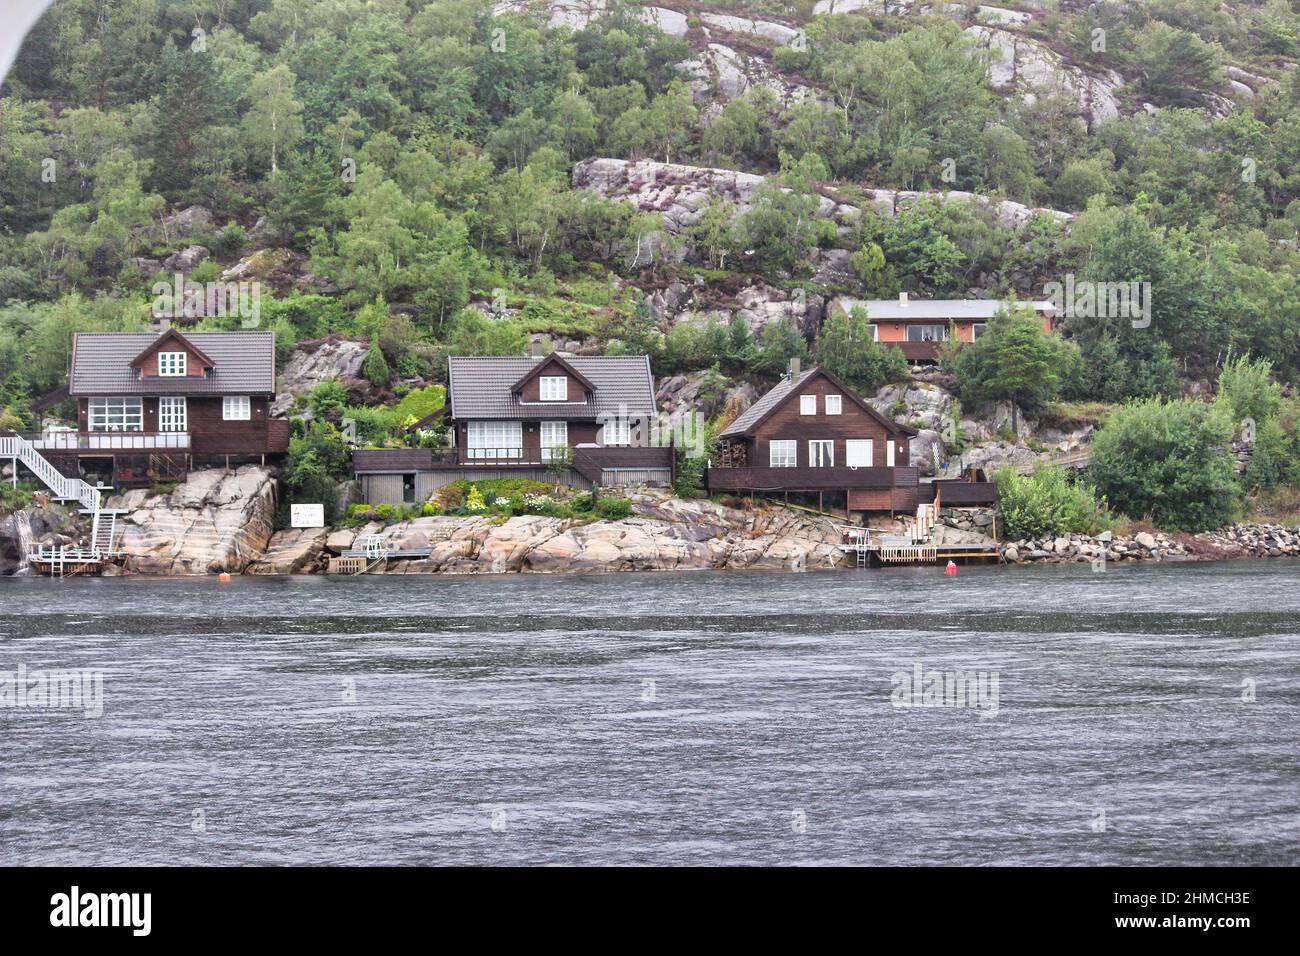 Stavanger norwegische Stadt mit atemberaubenden Landschaften, wunderschönen Fjorden, Bergen und langen weißen Stränden. Stockfoto